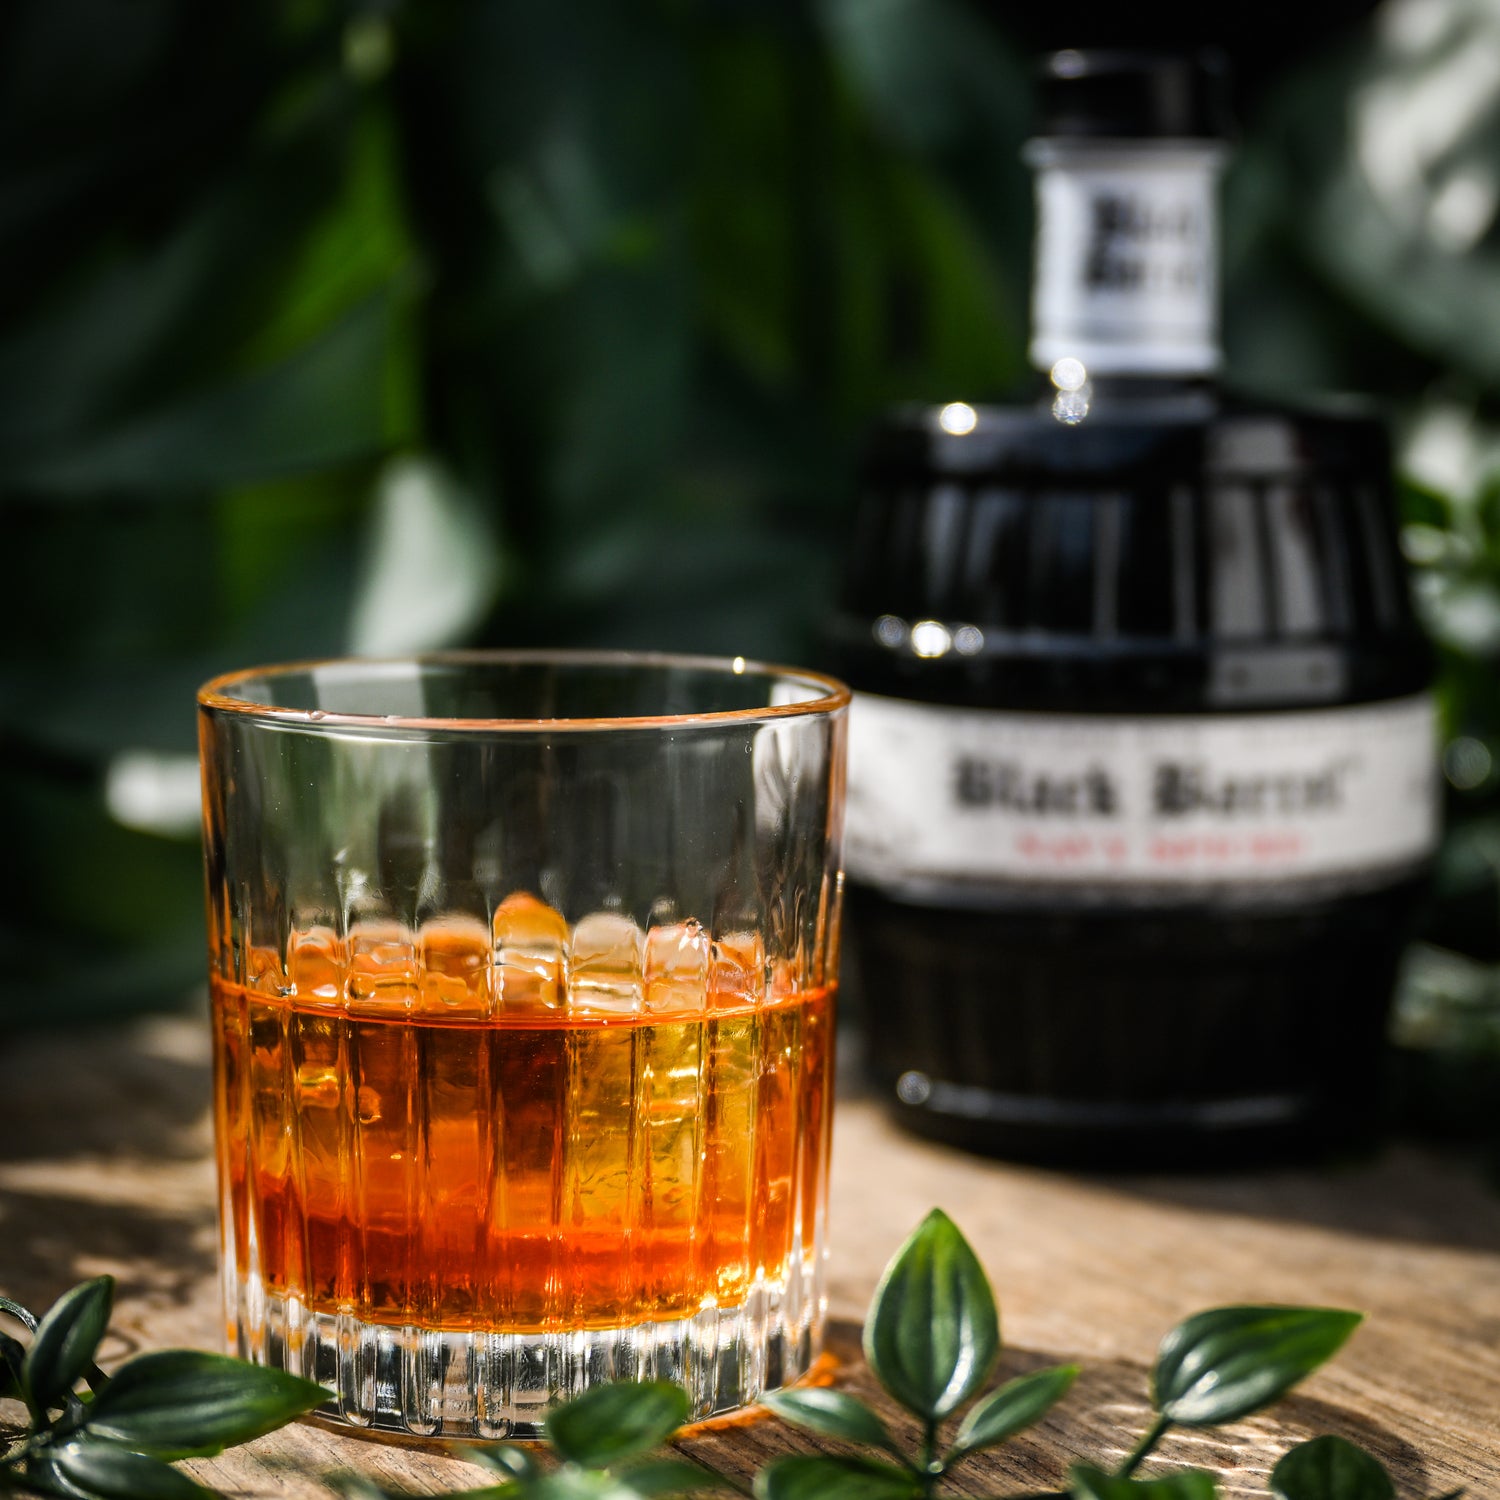 Black Barrel Rum Neat